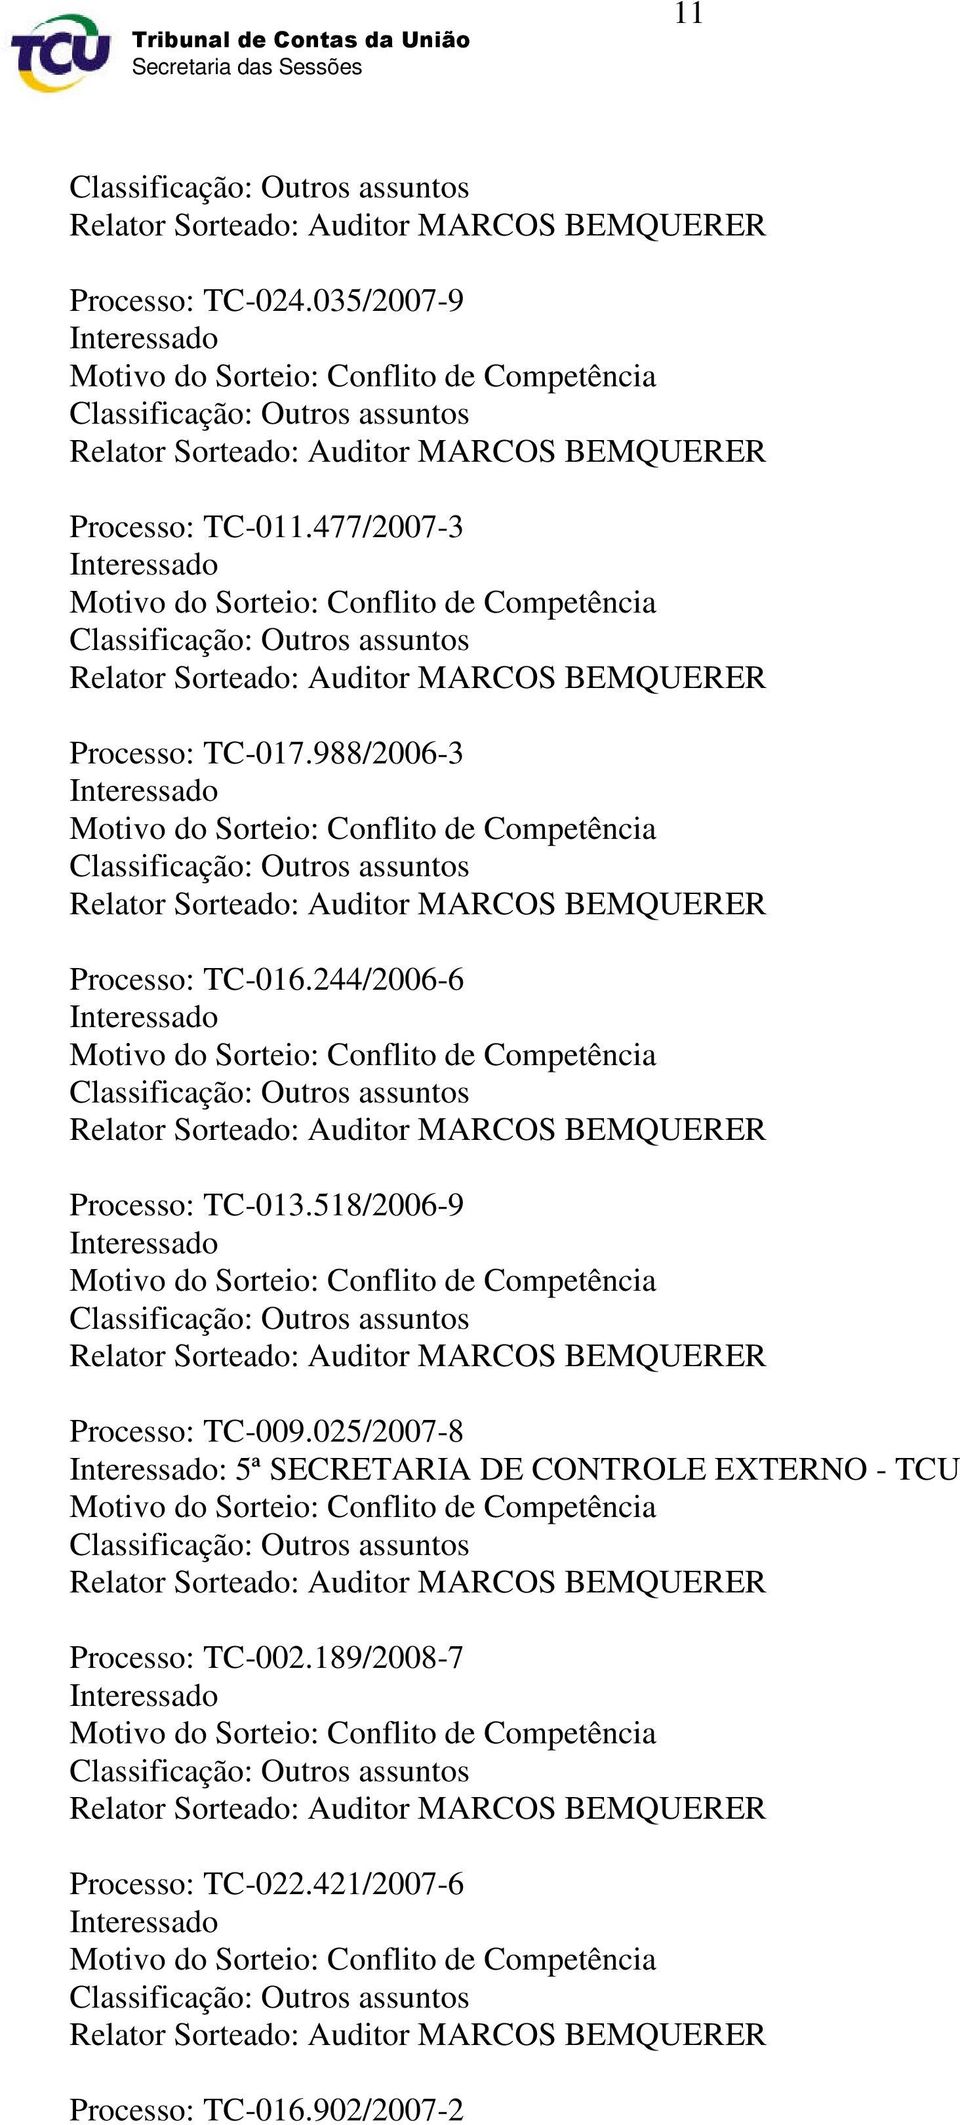 477/2007-3 Interessado Motivo do Sorteio: Conflito de Competência Classificação: Outros assuntos Relator Sorteado: Auditor MARCOS BEMQUERER Processo: TC-017.